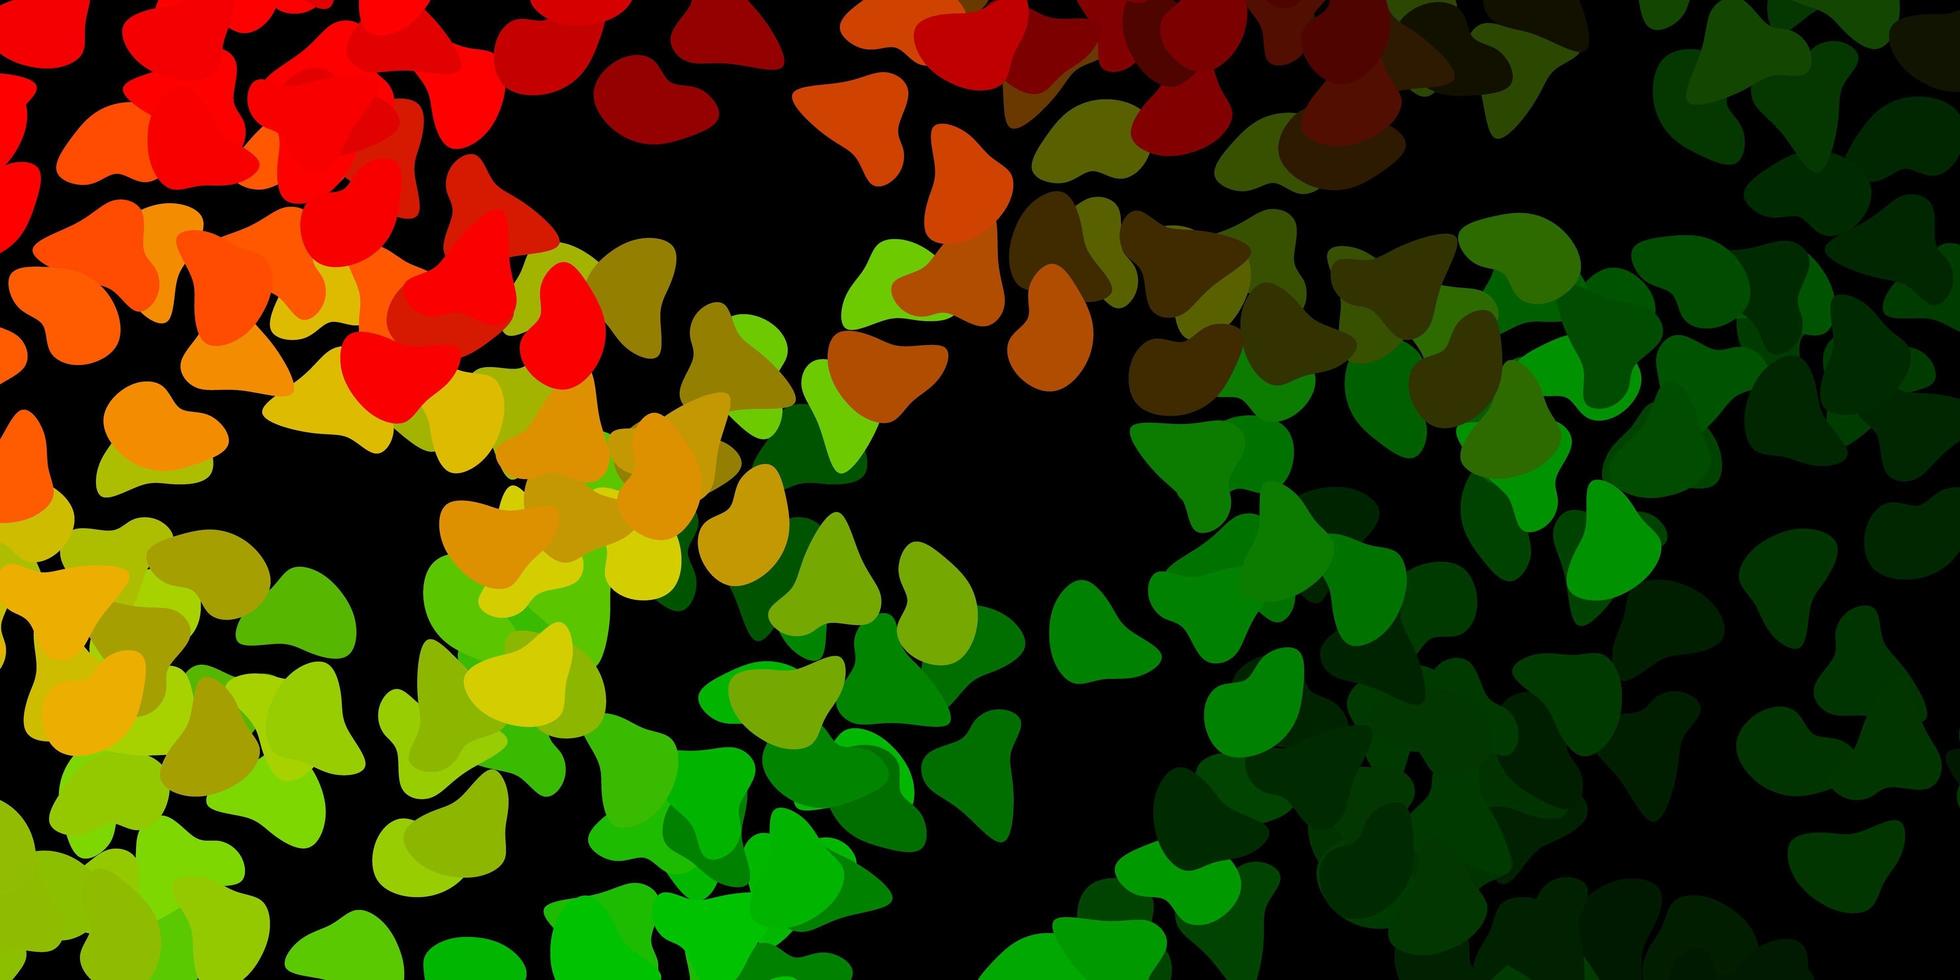 modelo de vetor verde escuro e vermelho com formas abstratas.